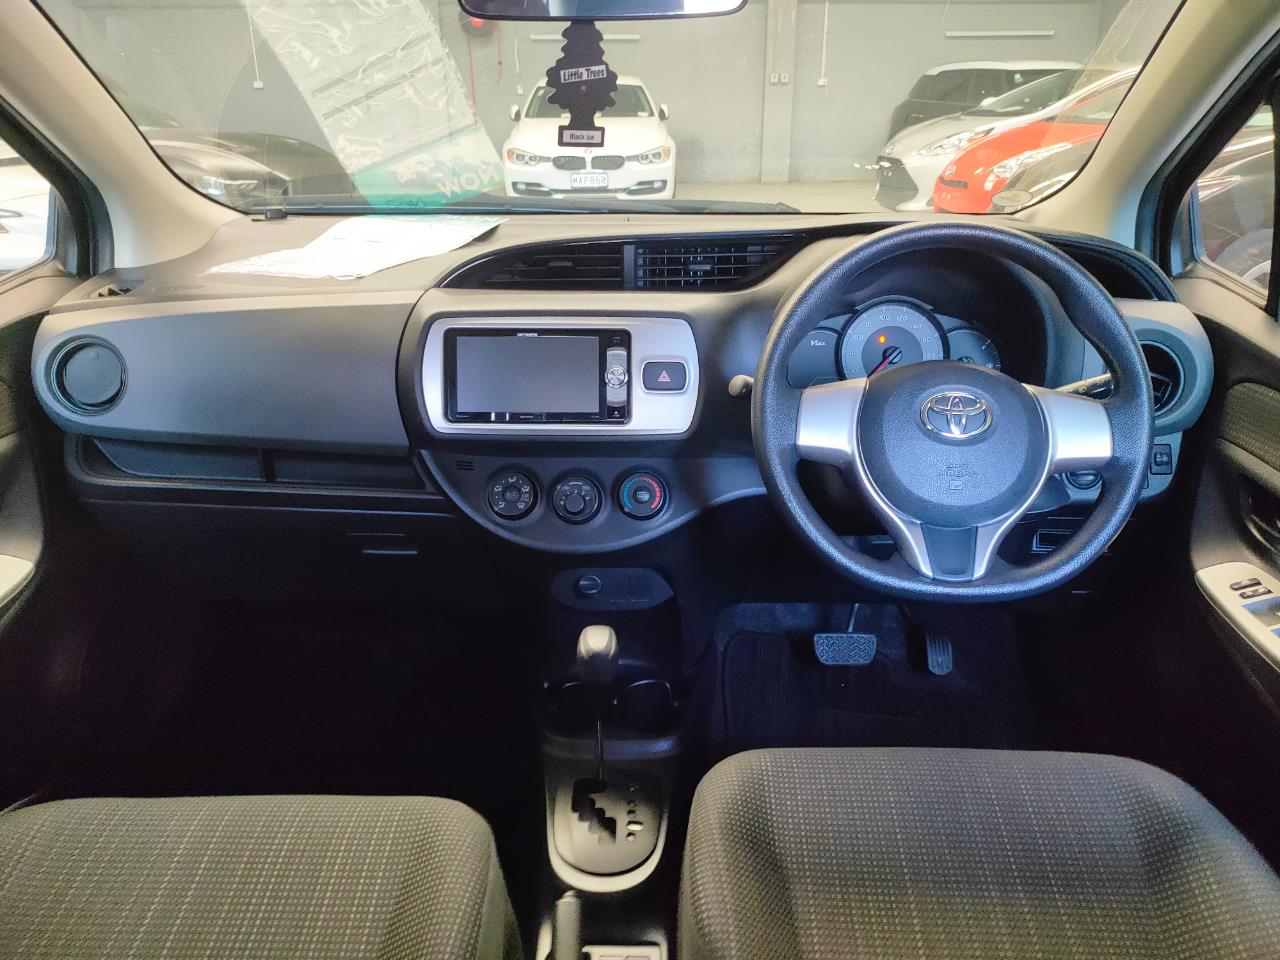 2015 Toyota Vitz